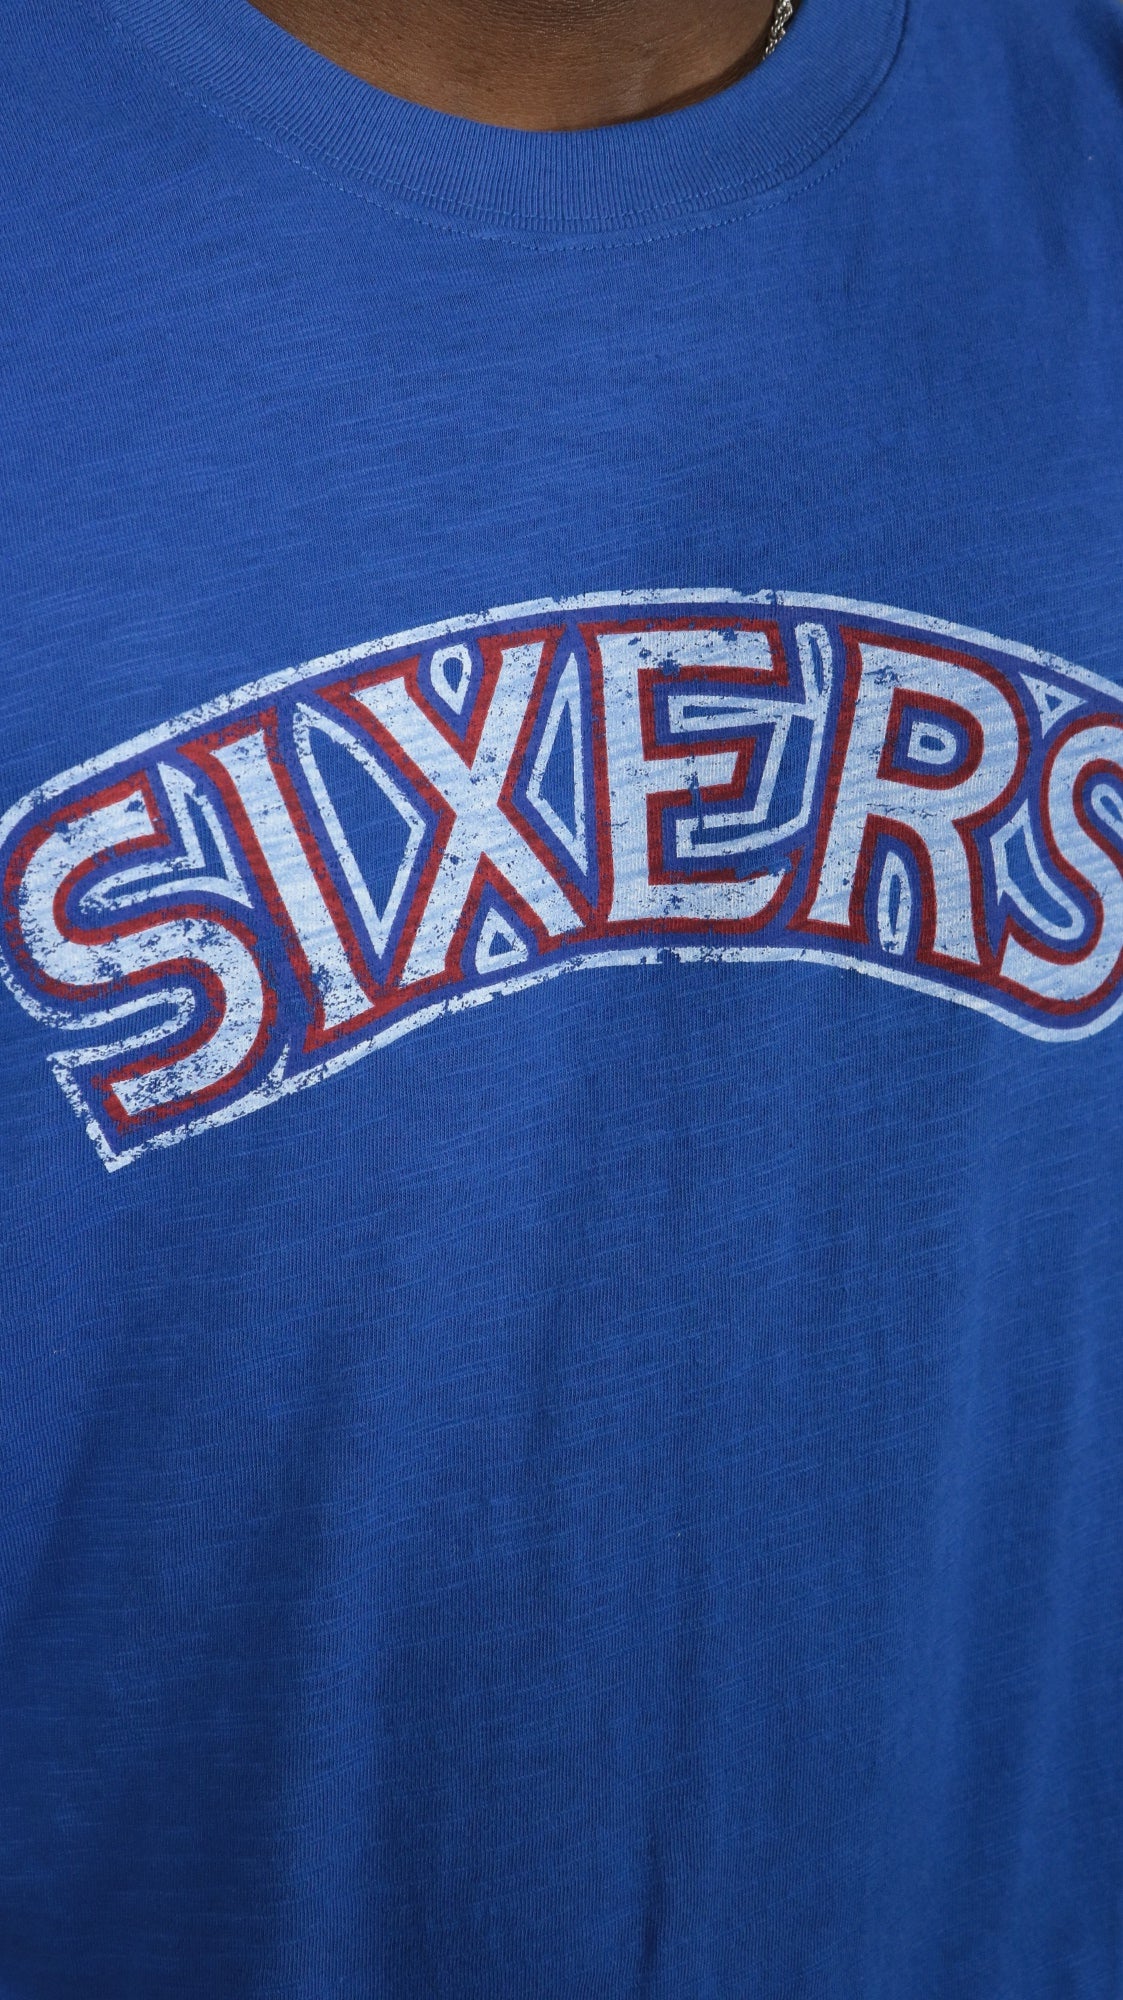 sixers wordmark Philadelphia 76ers "Sixers" Wordmark Hardwood Classics Legendary Slub Tee | Royal T-shirt